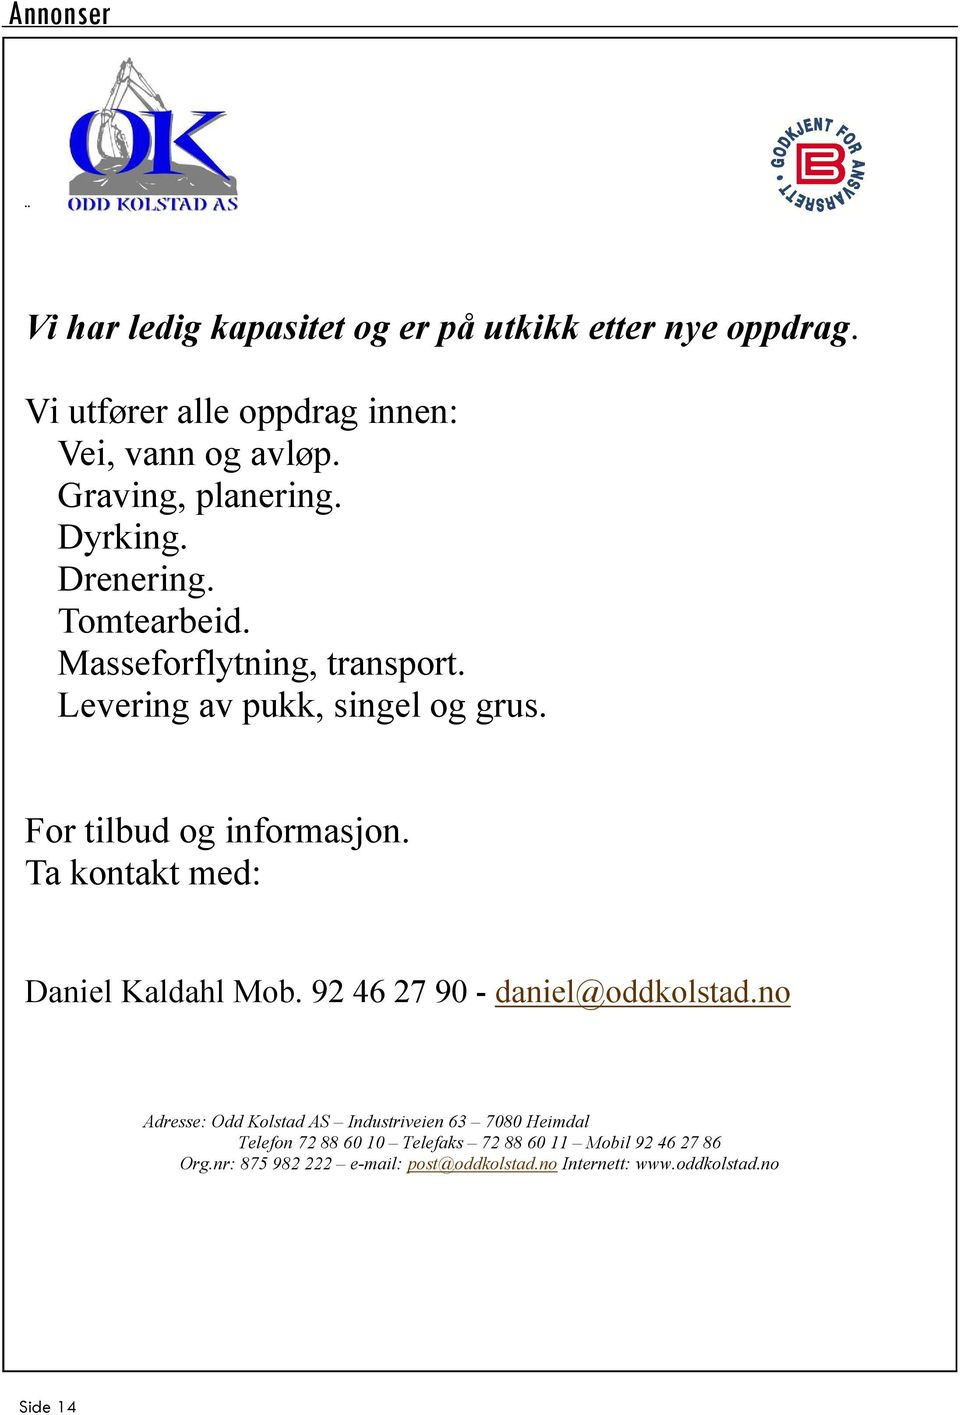 For tilbud og informasjon. Ta kontakt med: Daniel Kaldahl Mob. 92 46 27 90 - daniel@oddkolstad.